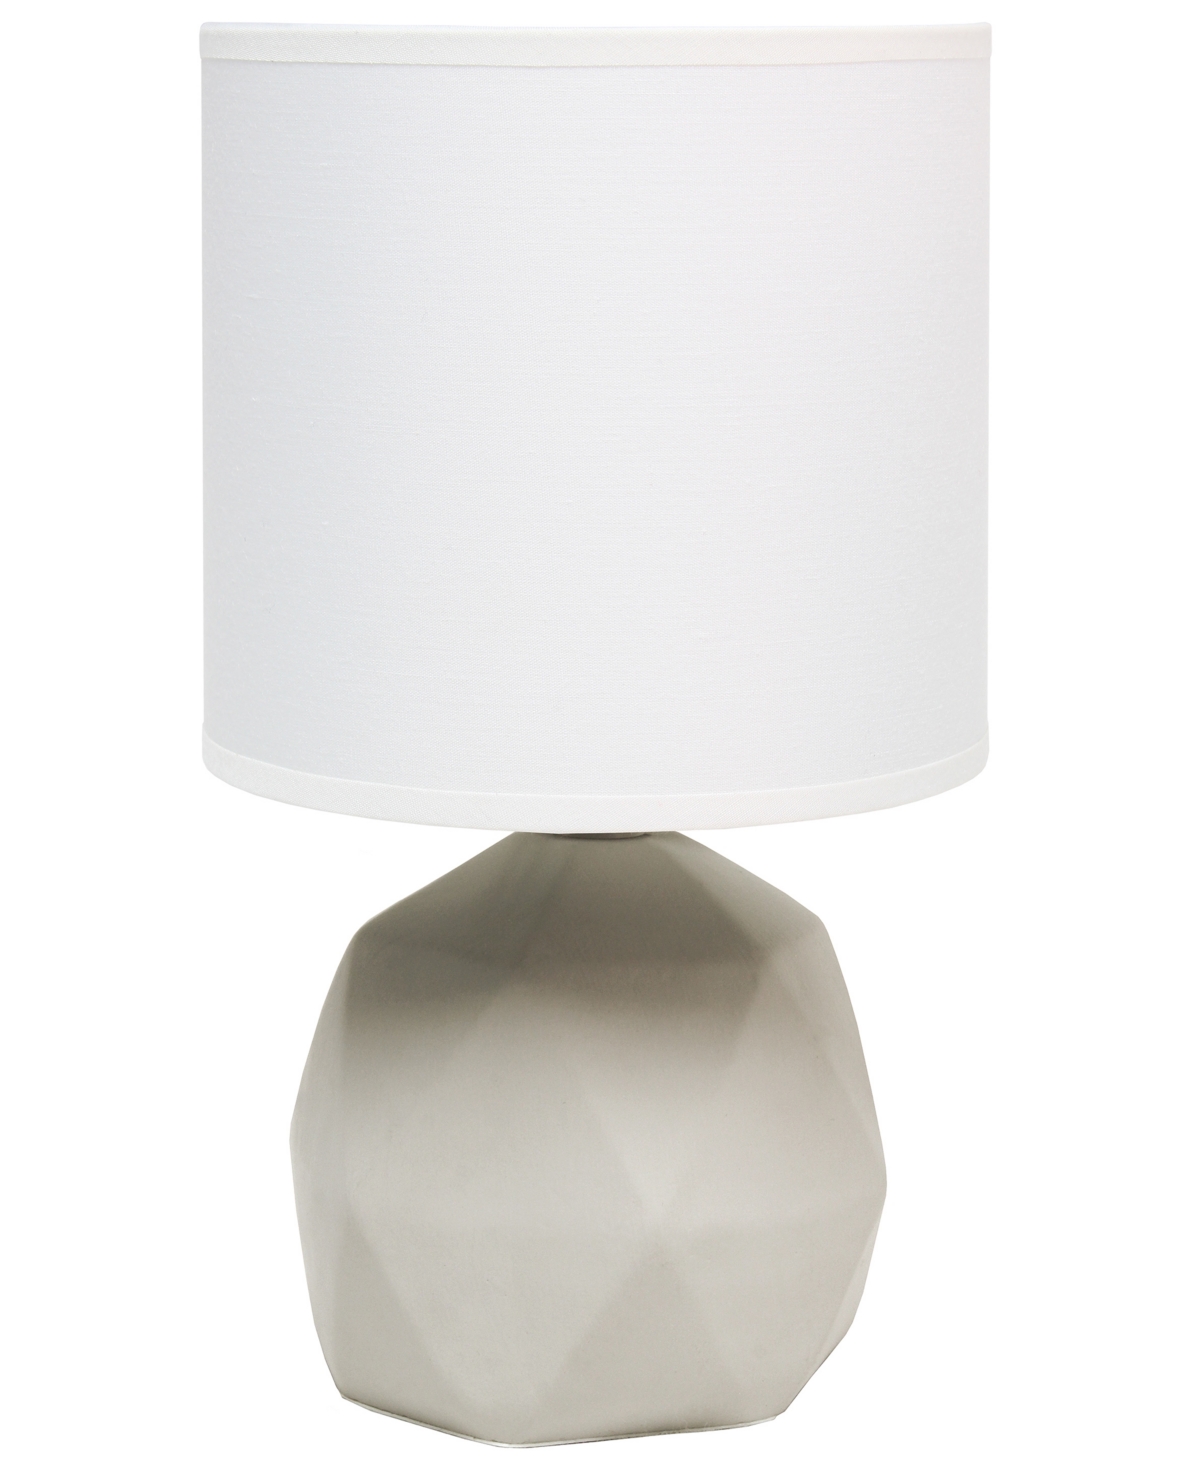 Simple Designs Geometric Concrete Lamp In White